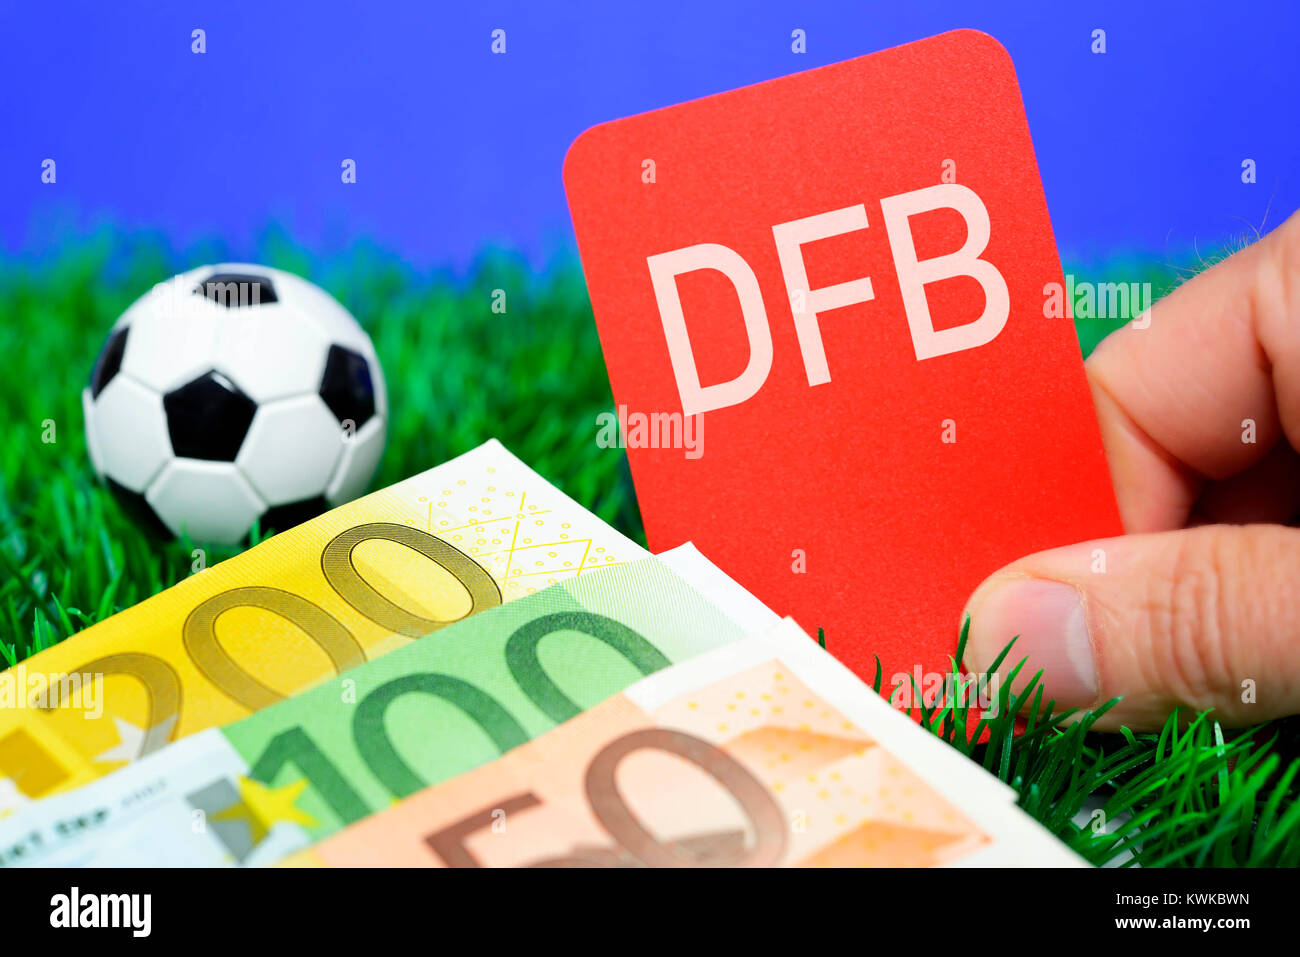 Miniatur-Fußball und Hand mit roten Karte, DFB-Skandal, Miniaturfu? ball Und Hand Mit Roter Karte, DFB-Skandal Stockfoto